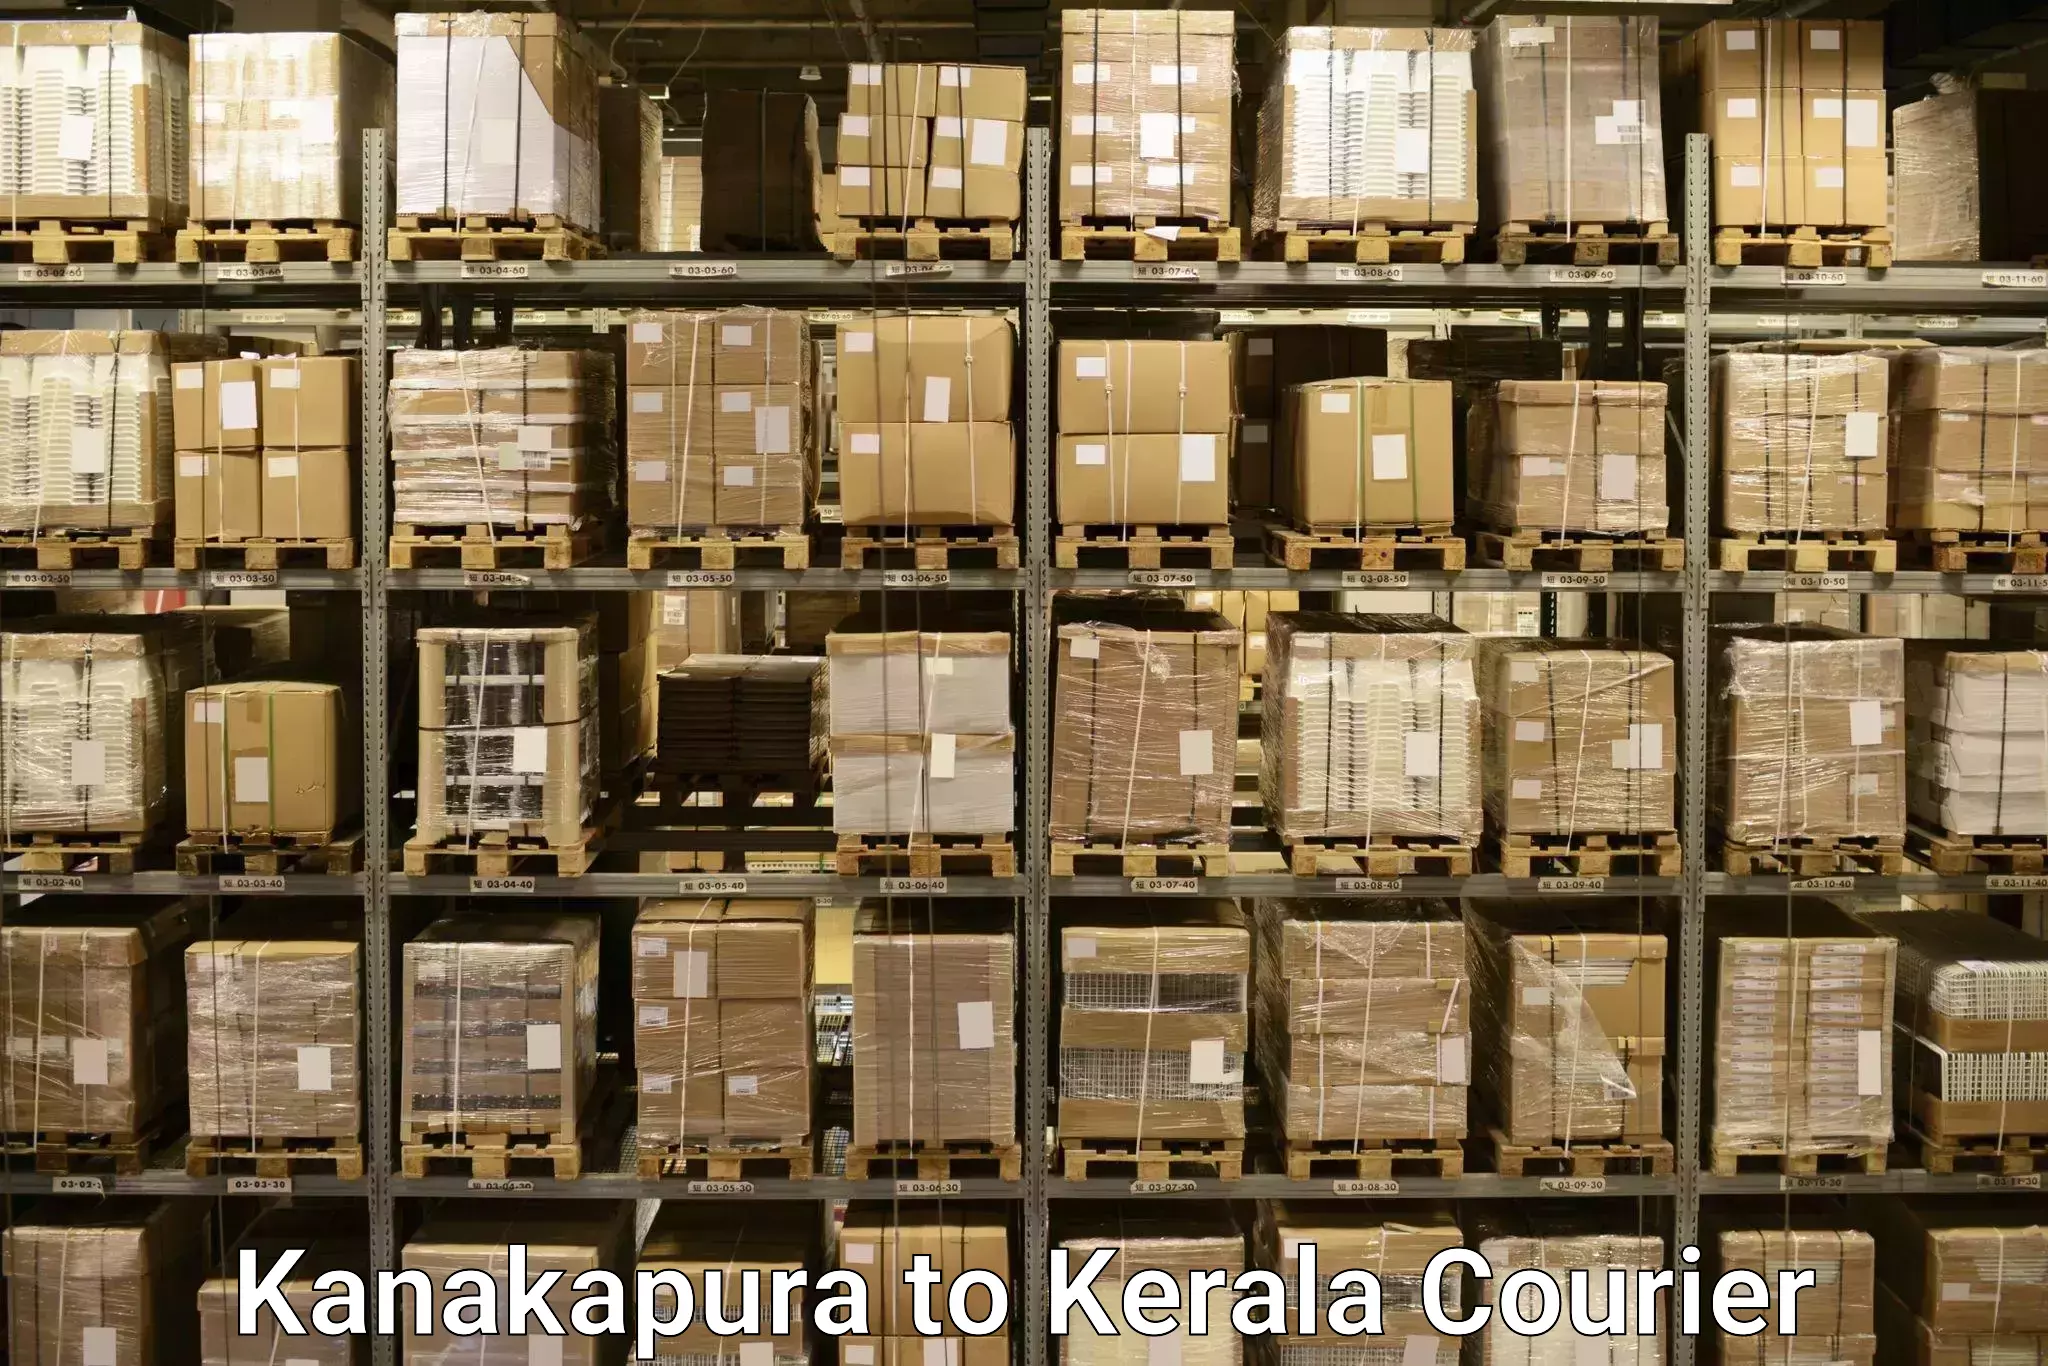 Luggage delivery providers in Kanakapura to Mundakayam